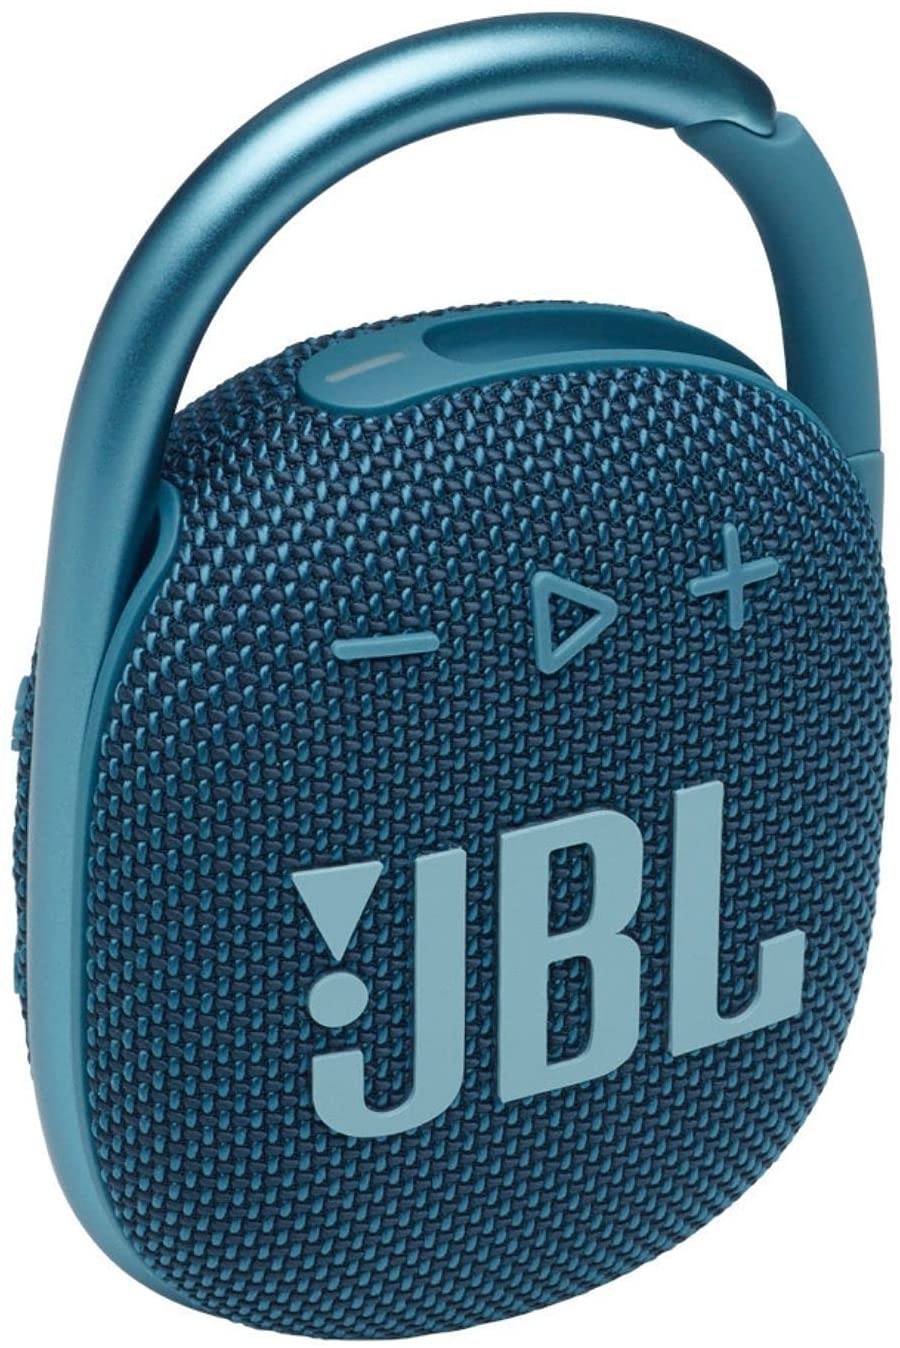 JBL CLIP 4 Waterproof Wireless Portable Bluetooth Speaker - Blue (New)